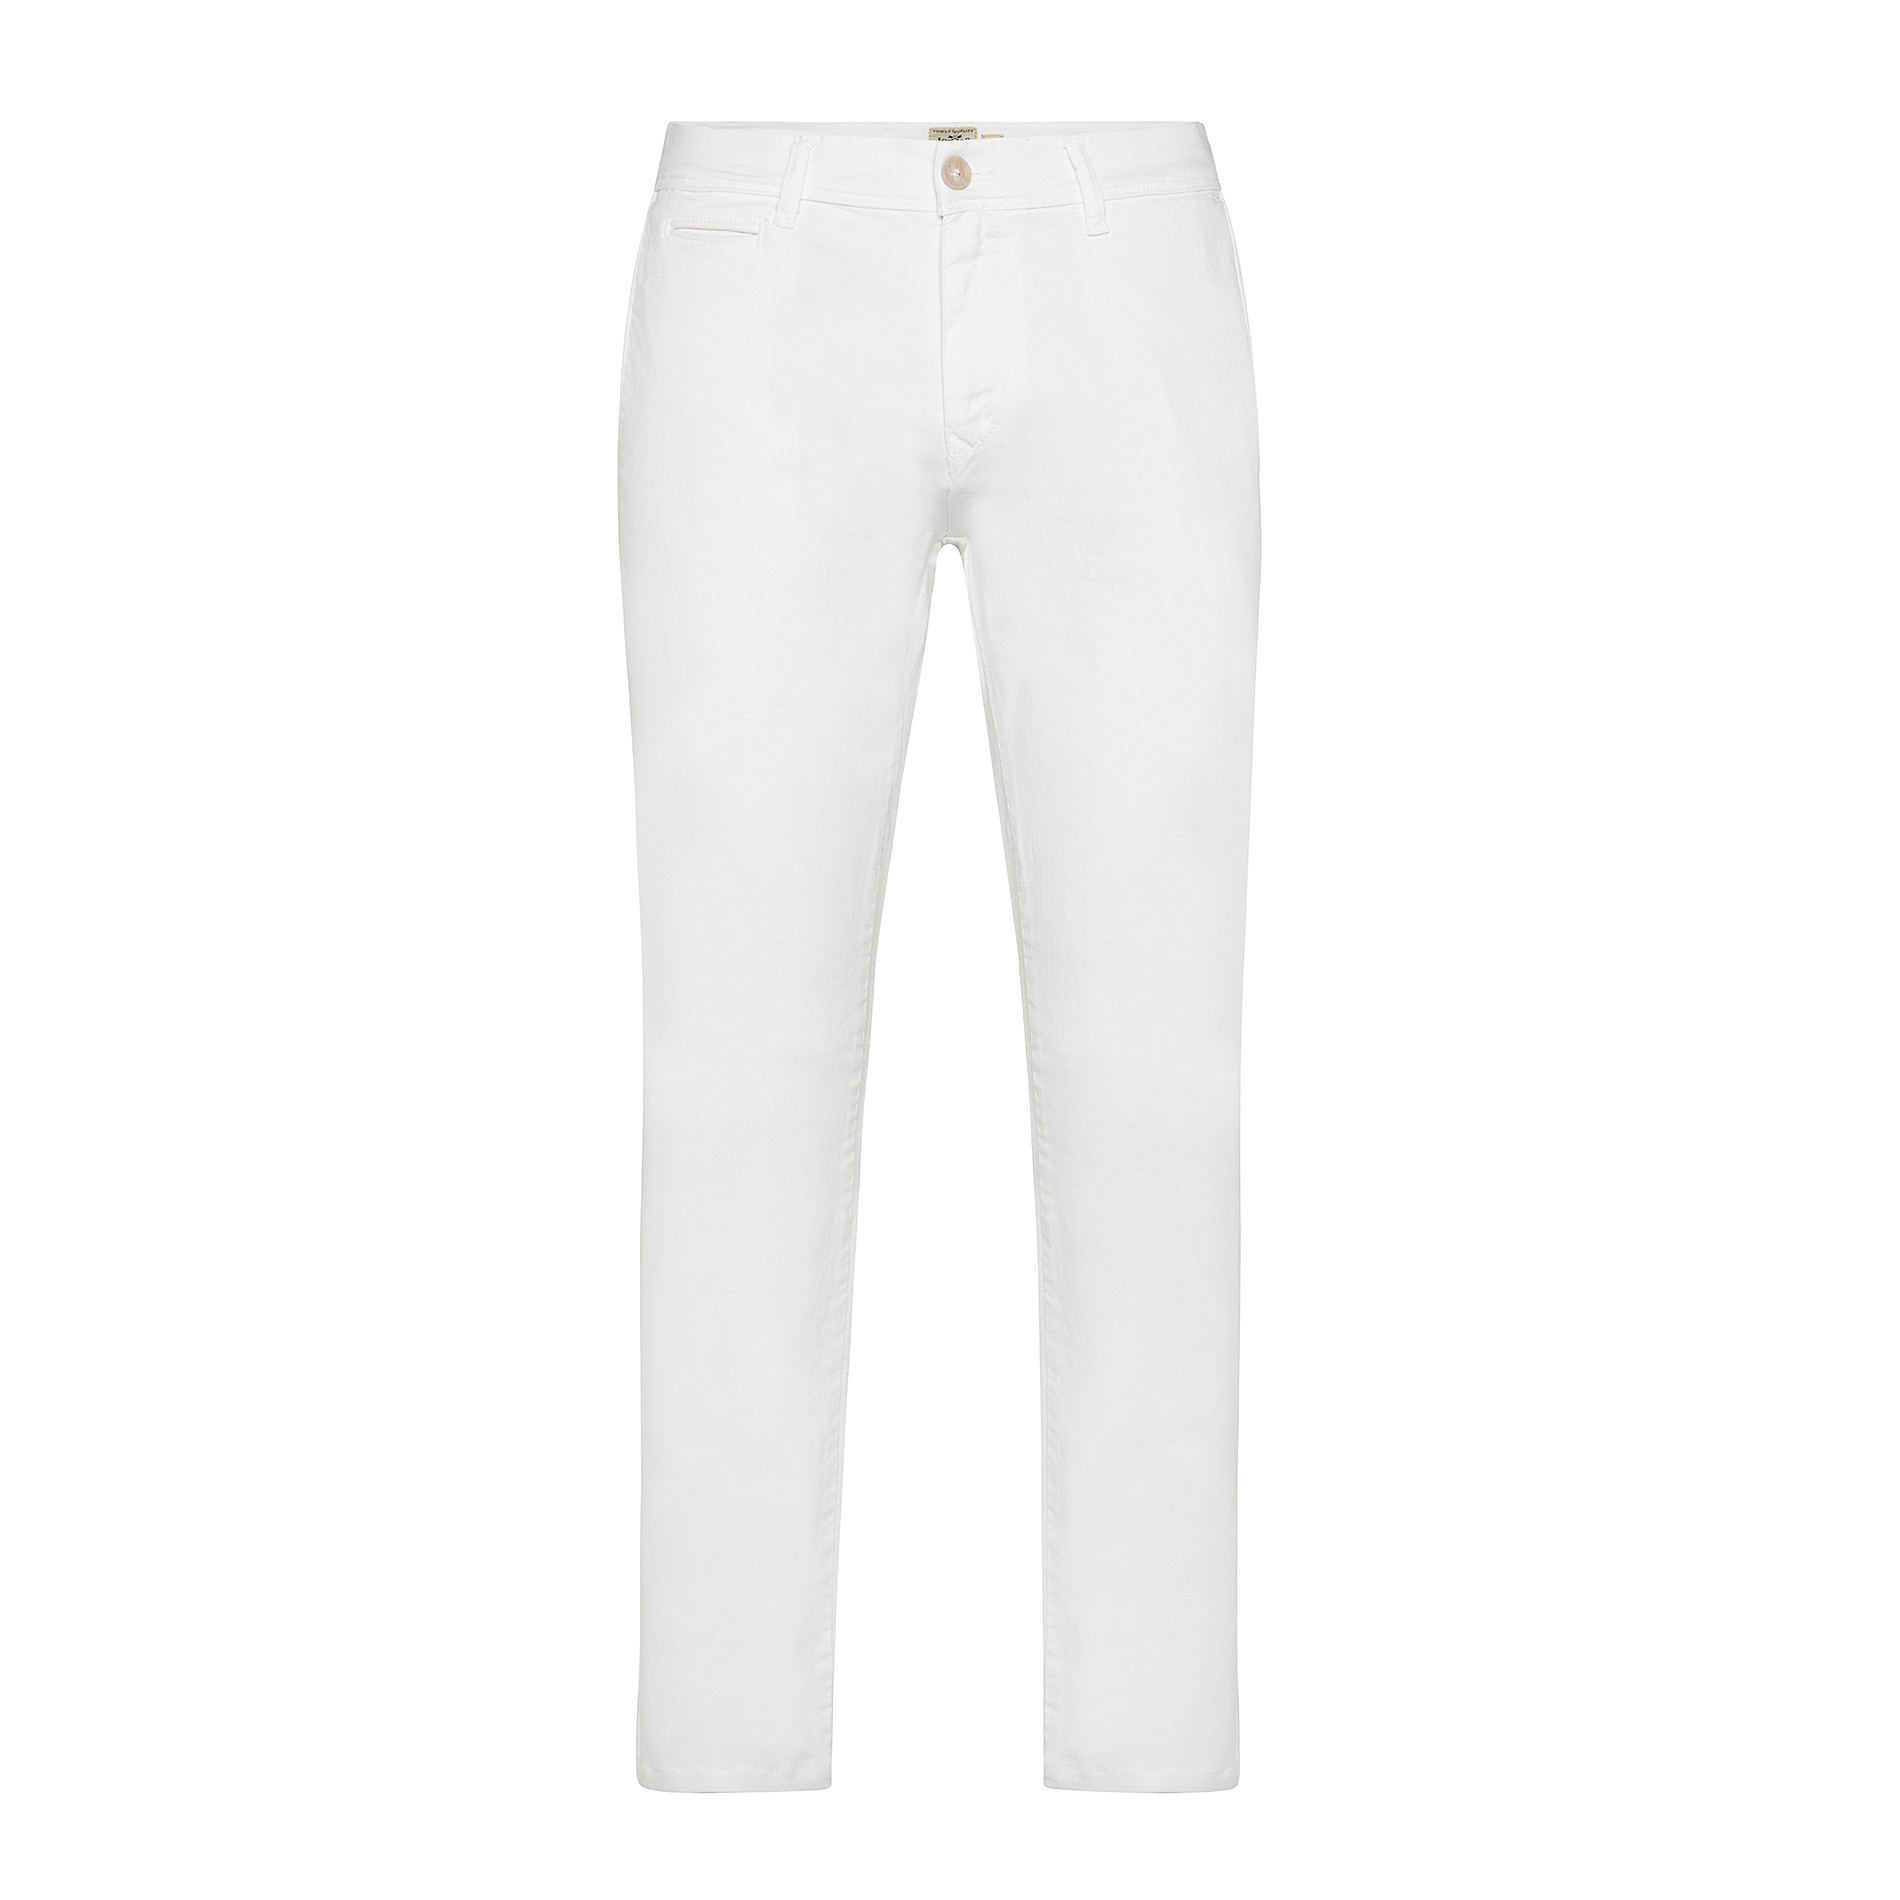 Pantalone chino gabardina stretch JCT, Bianco, large